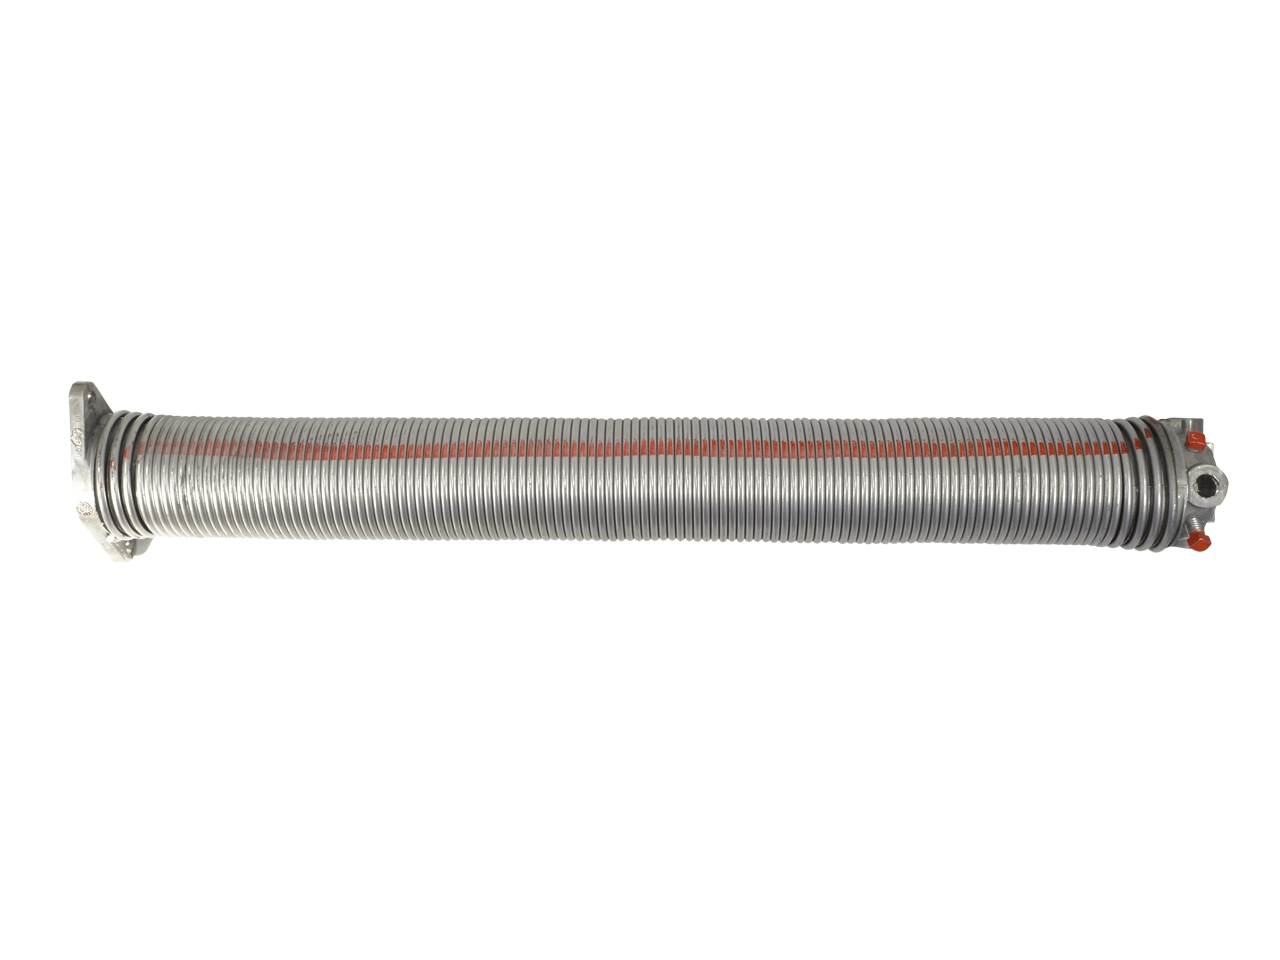 Torfeder, Innendurchmesser 95 mm, Drahtstärke 8,5 mm, Windung Links, mit Köpfen für Welle 25,4mm